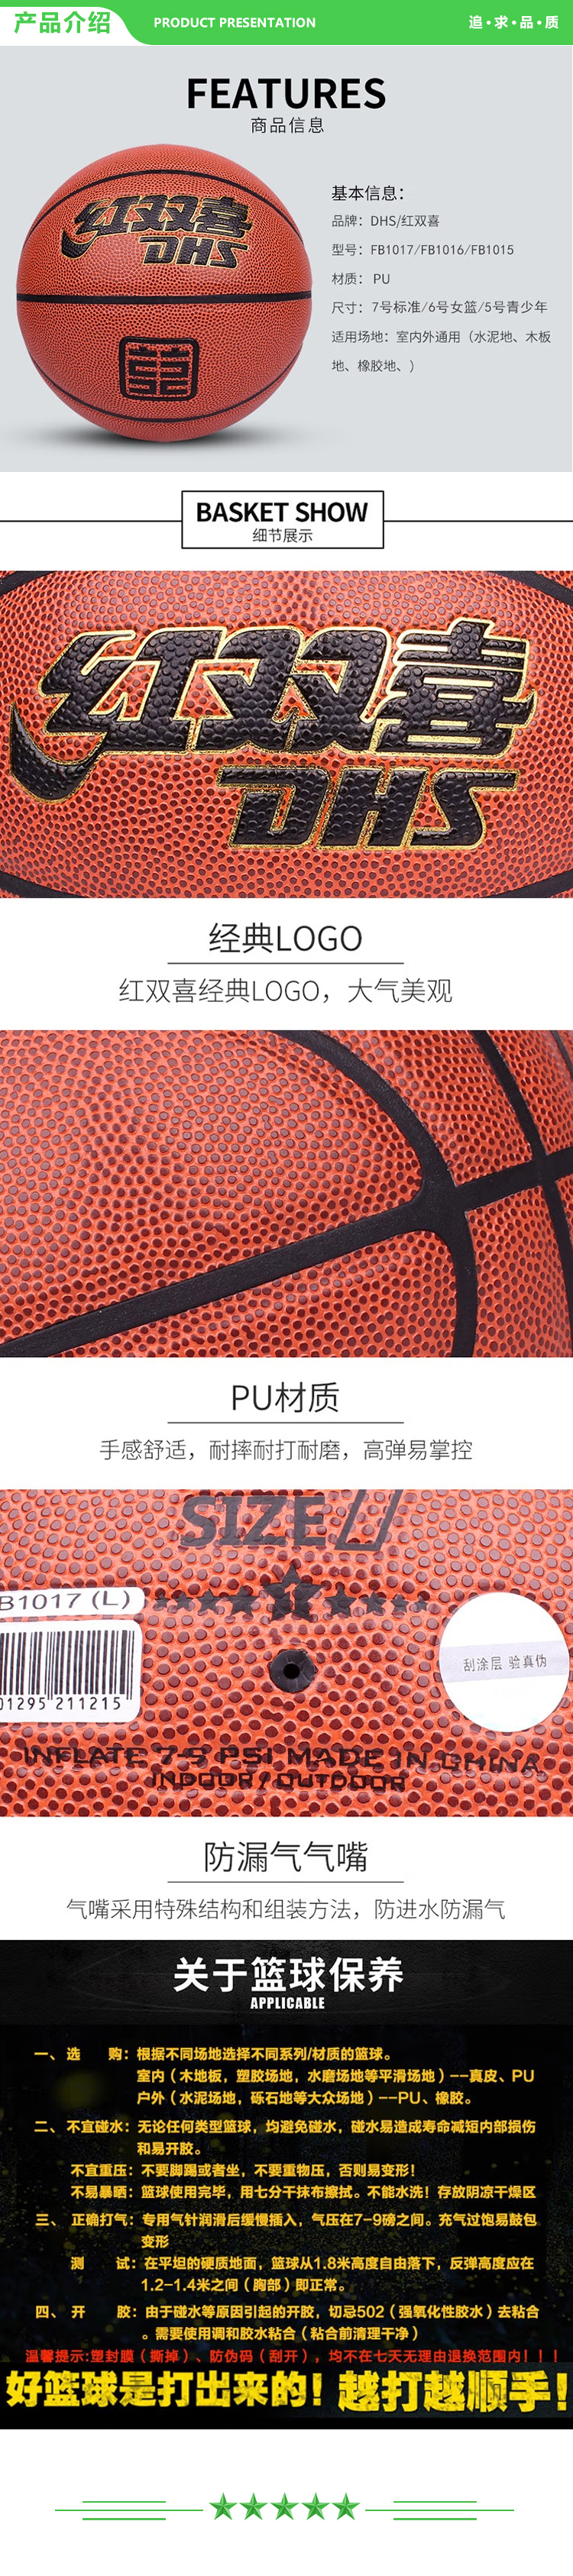 红双喜 DHS FB1017 七号篮球 一星级篮球室内外通用棕色PU球 一星级PU篮球  (2).jpg